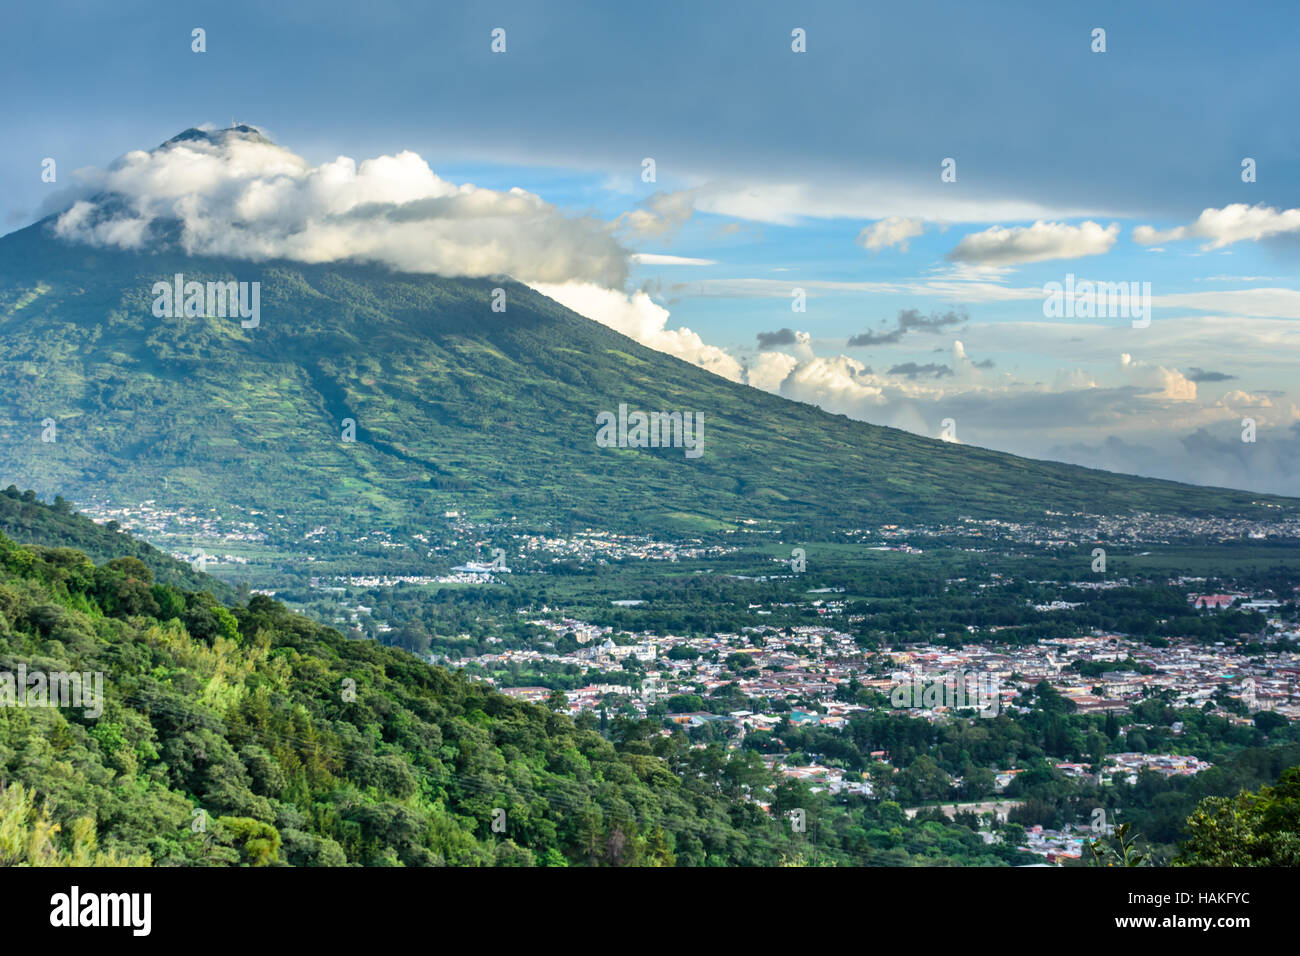 Anzeigen von Agua Vulkan hoch über spanische Kolonialstadt & UNESCO-Weltkulturerbe von Antigua in panchoy Tal, Guatemala, Mittelamerika Stockfoto